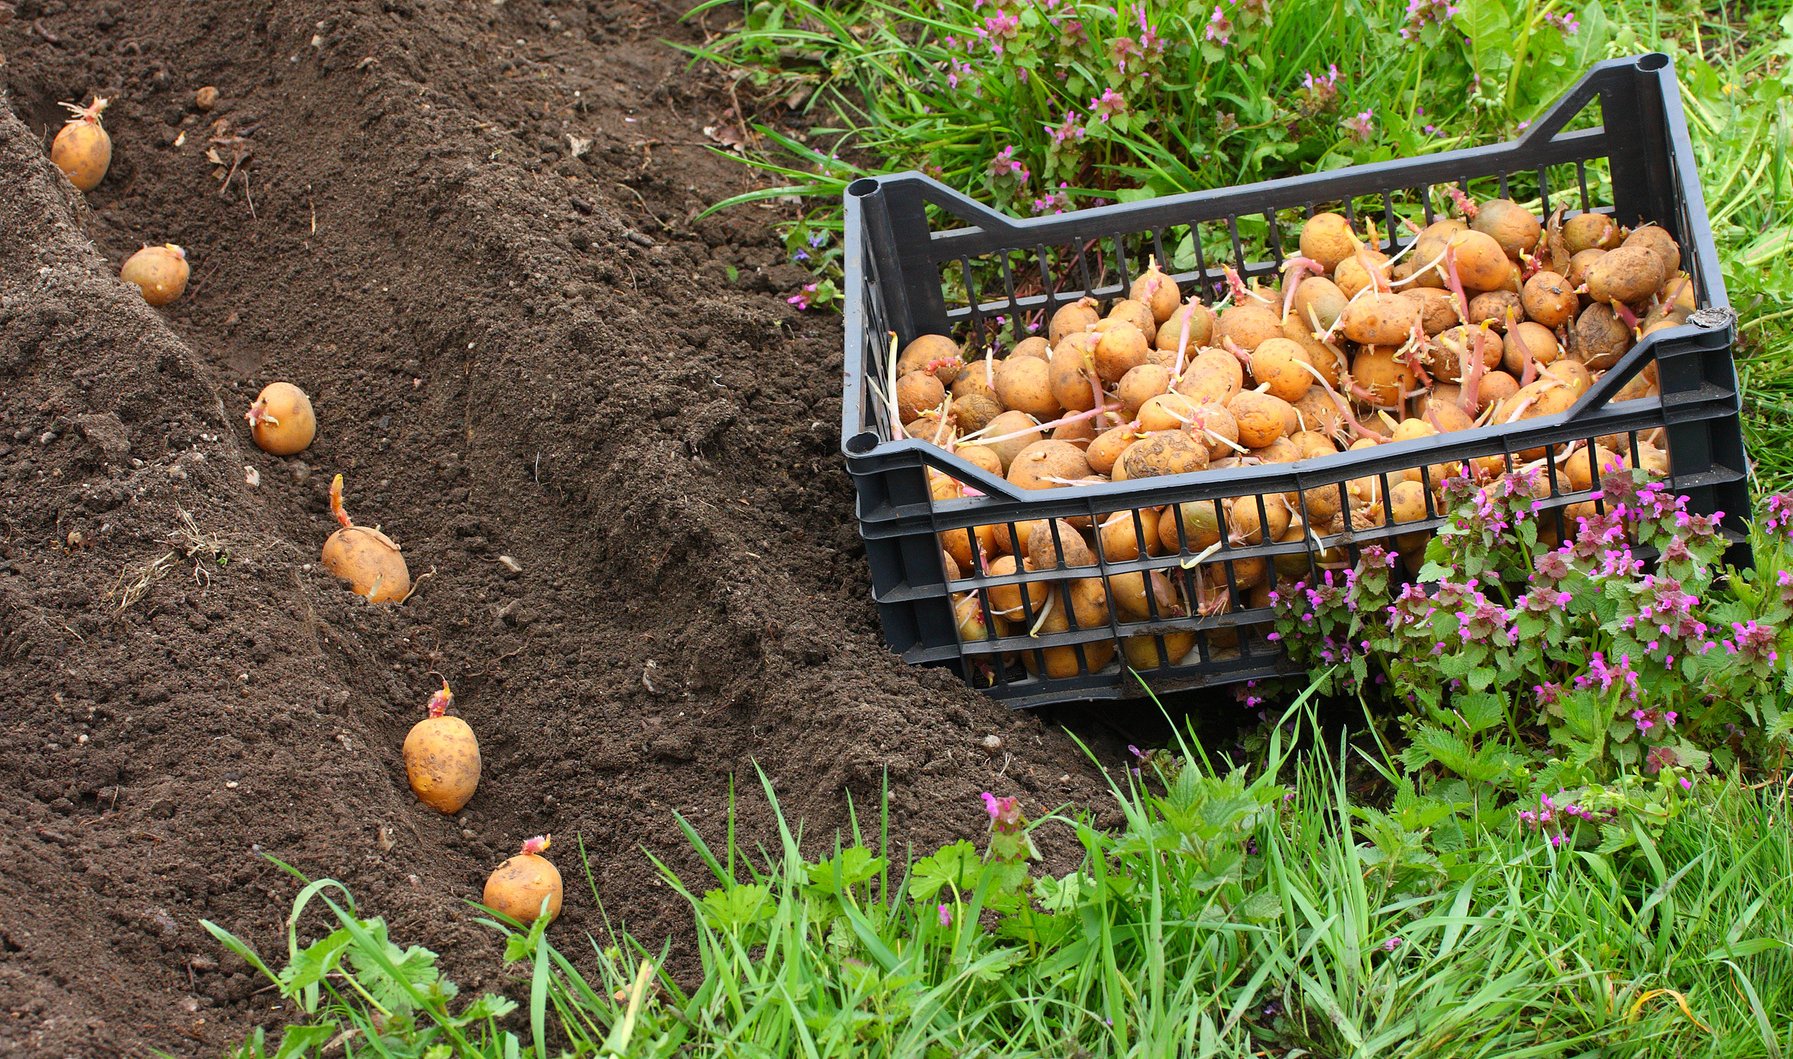 Добрива для картоплі: вибір, застосування та результати | Коли вирощуєте картоплю, важливо забезпечити належне живлення рослин, щоб отримати більші та якісніші врожаї. У цій статті ми розглянемо різні види добрив для картоплі, як правильно їх використовувати та які результати від них очікувати.